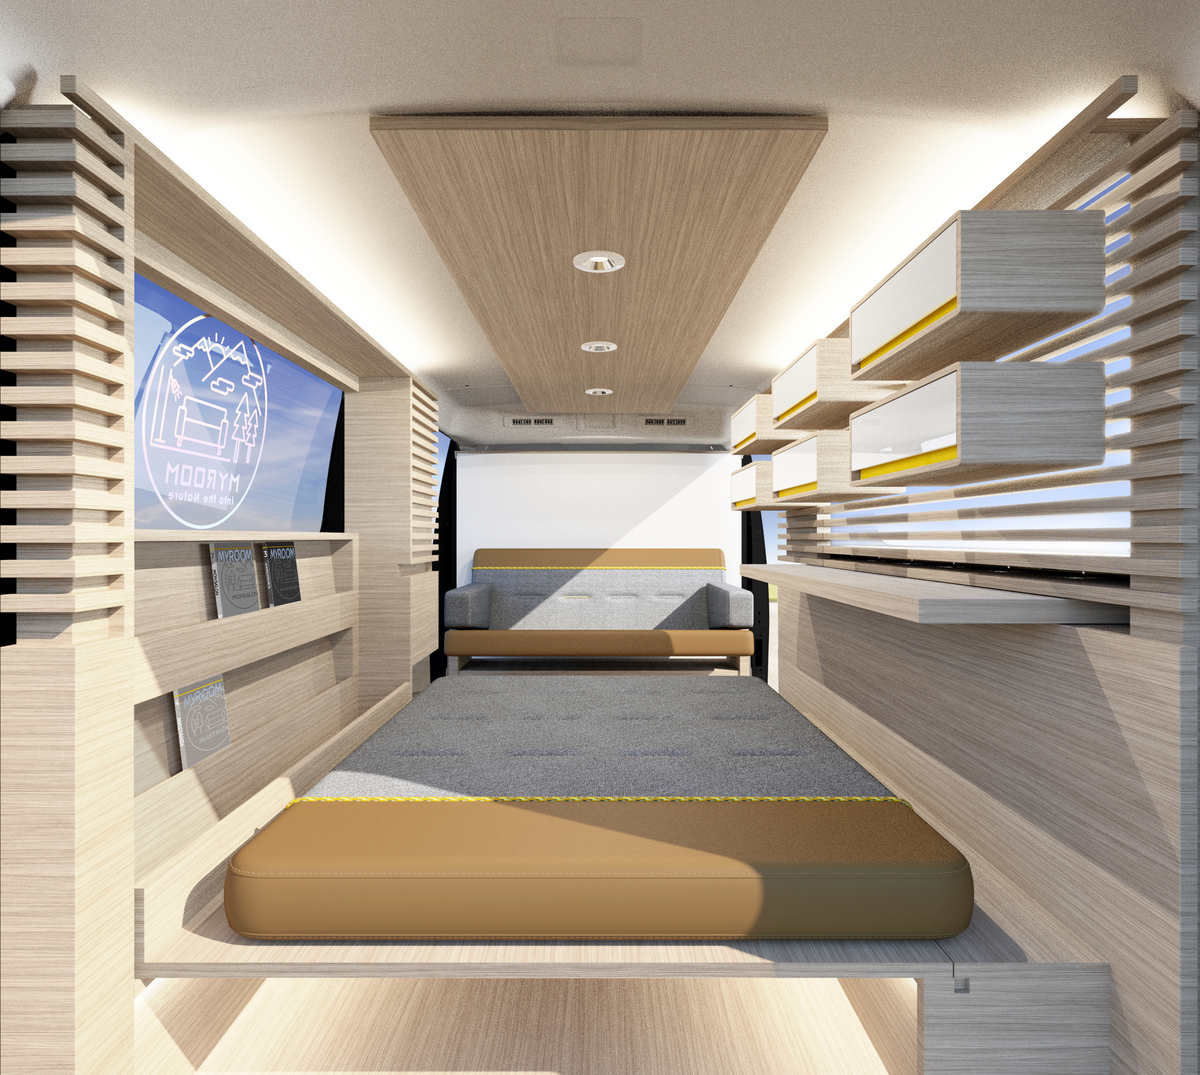 imagen 5 de Nissan Caravan Mountain Base concept, la camper que esperabas se presenta en Tokio en 2022.